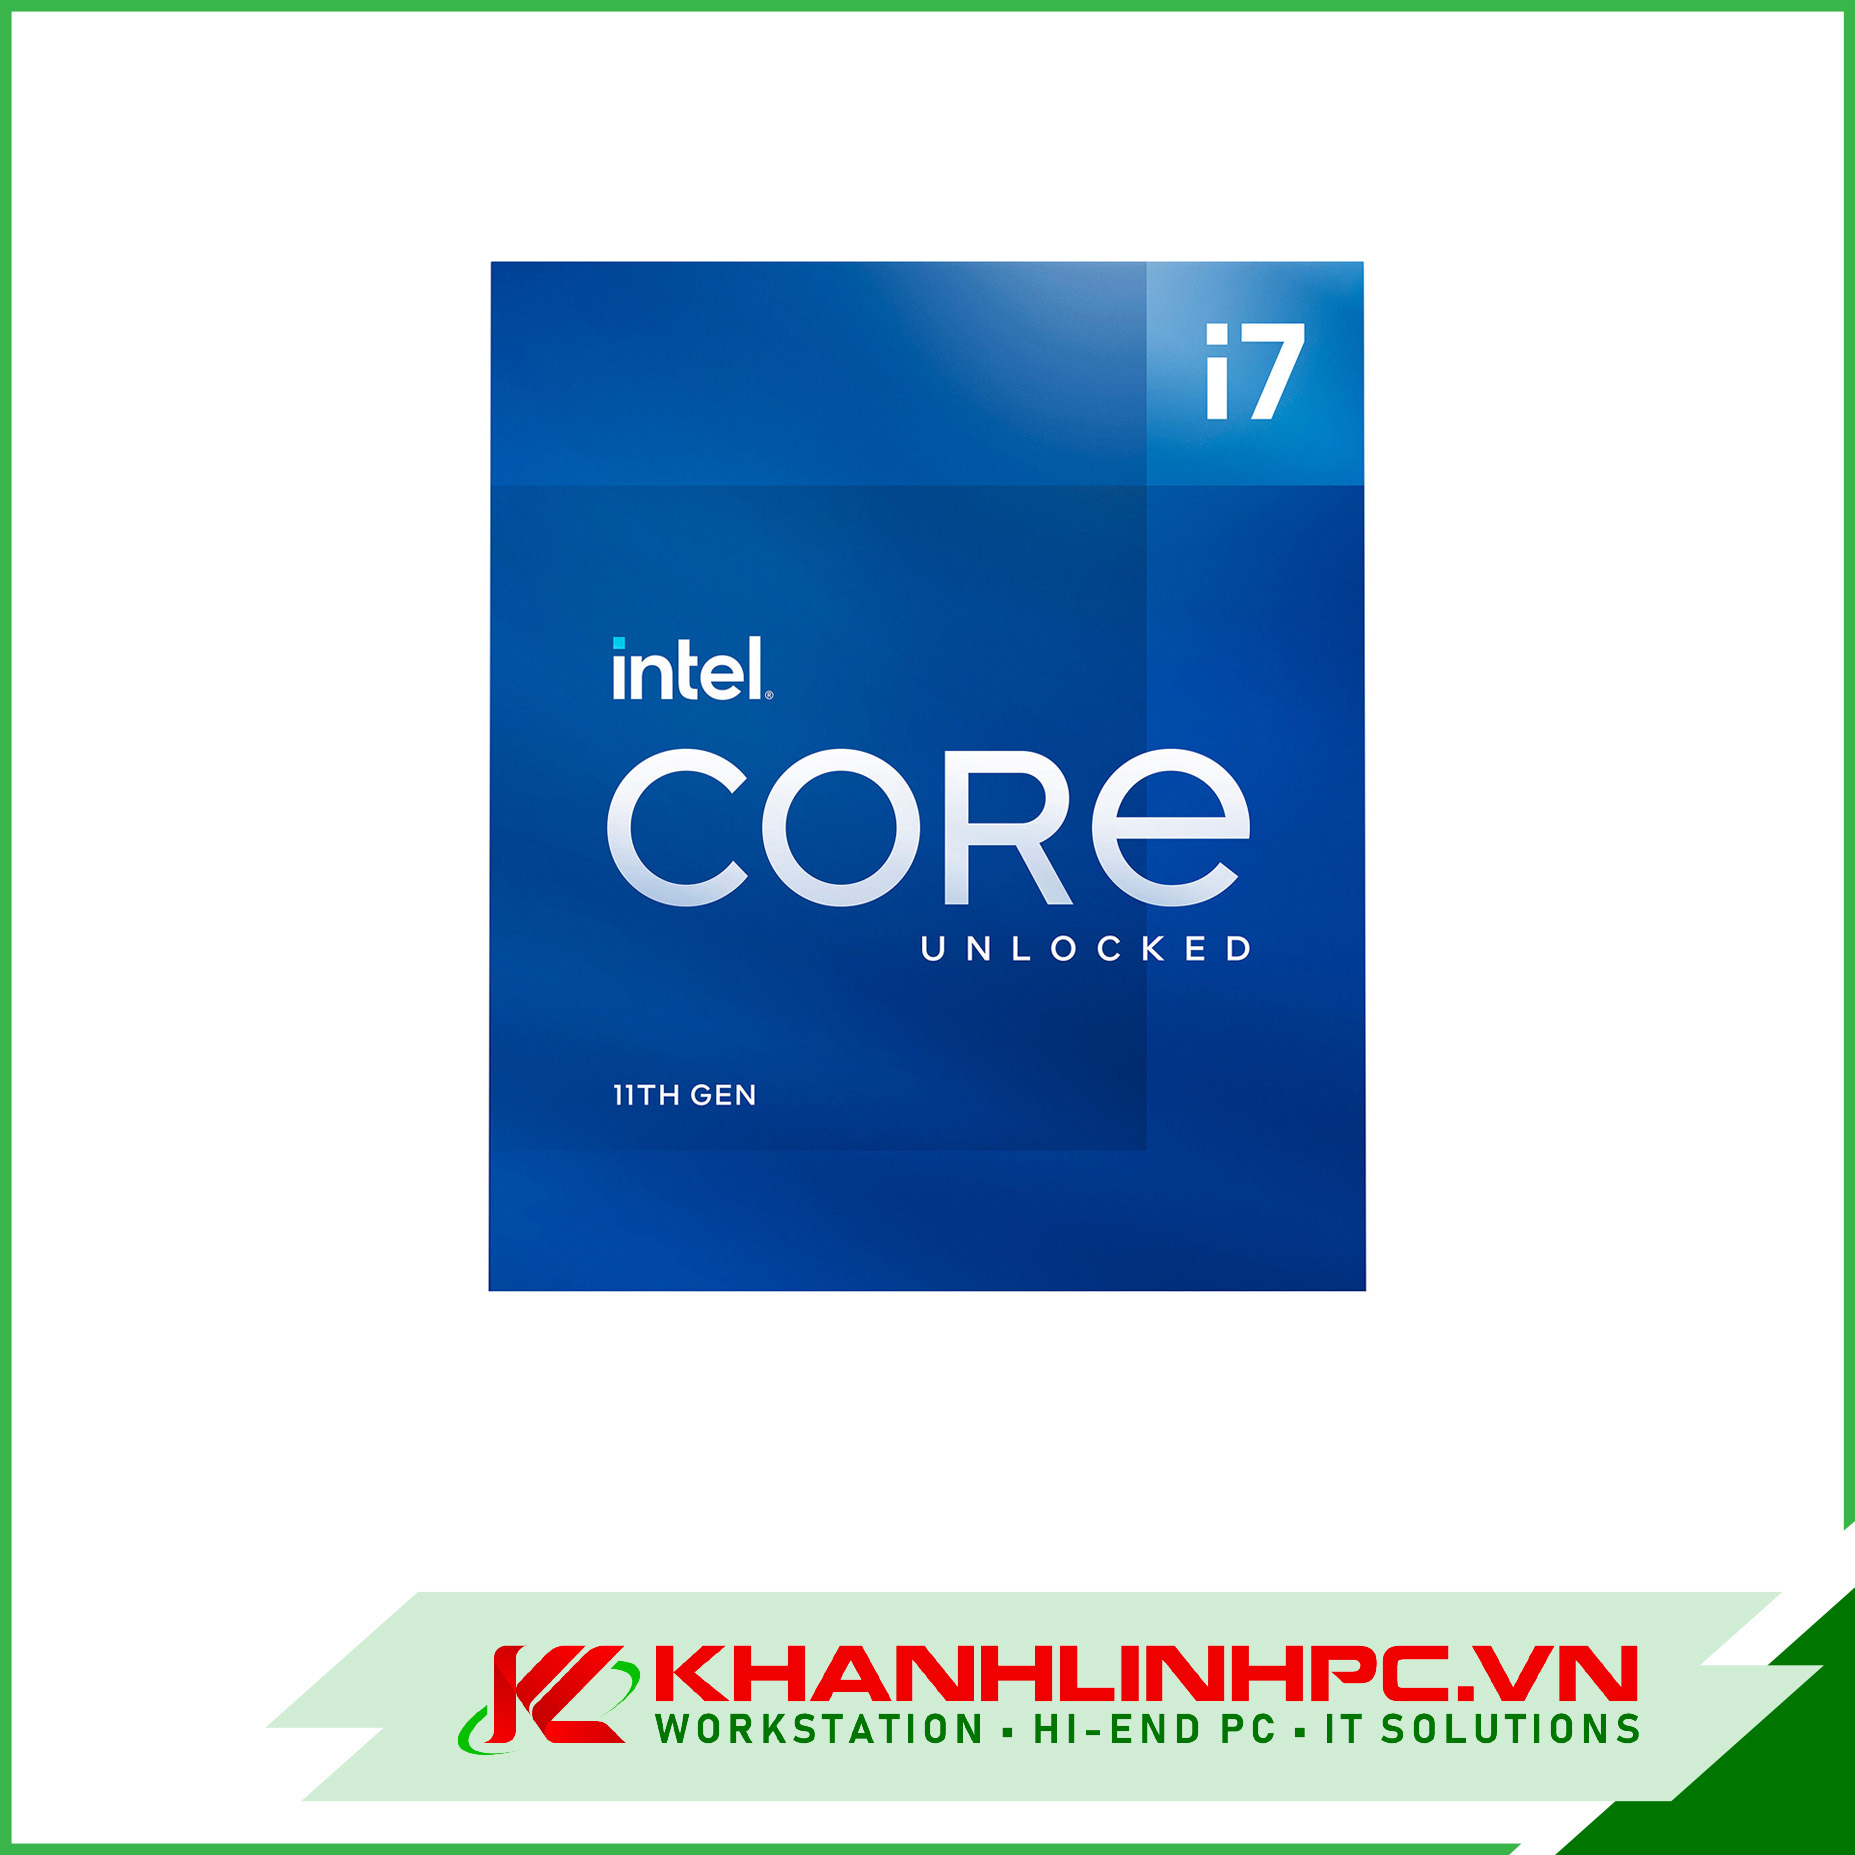 CPU Intel Core i7-11700K (3.6GHz Turbo 5GHz, 8 Nhân 16 Luồng, 16MB Cache, 125W) - Socket Intel LGA 1200